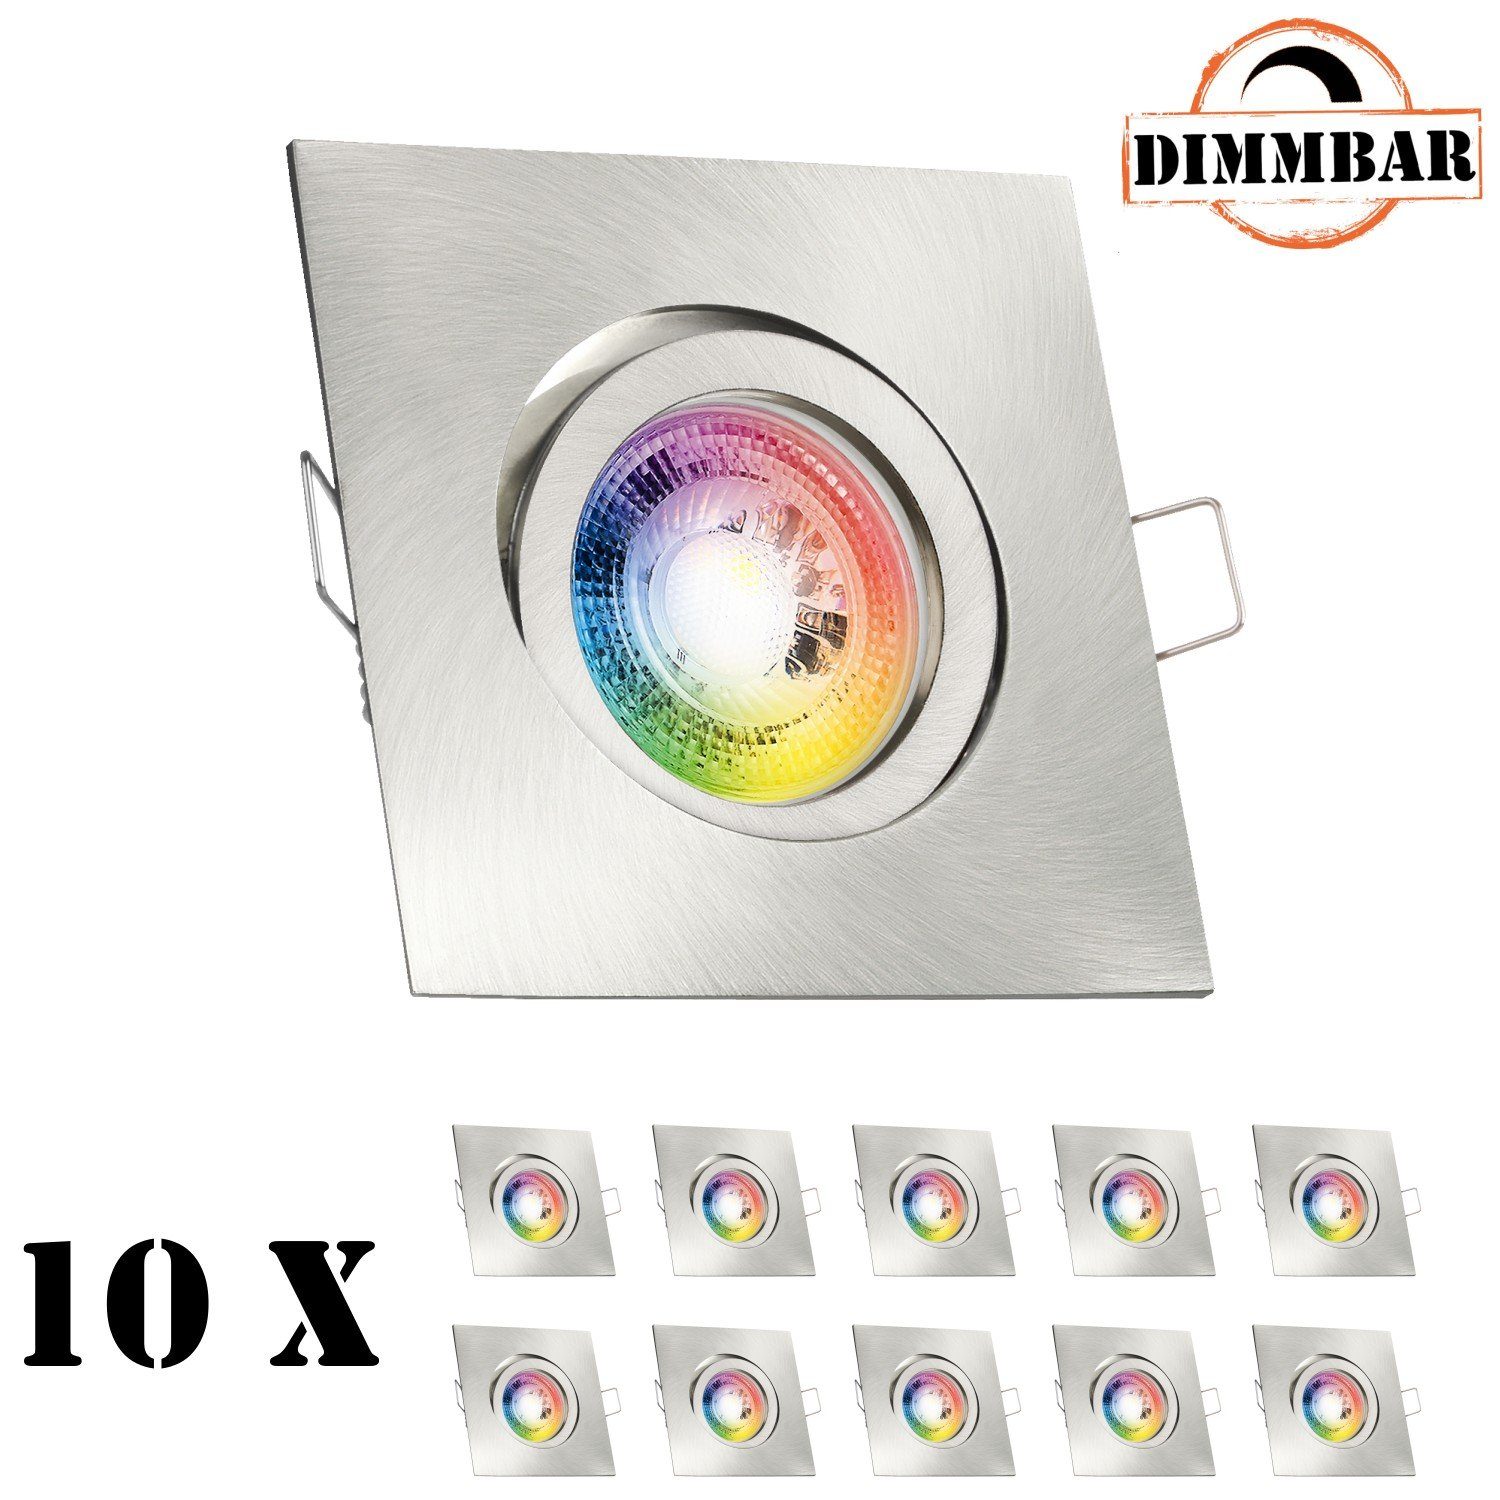 LEDANDO LED Einbaustrahler 10er RGB LED Einbaustrahler Set GU10 in edelstahl / silber gebürstet m